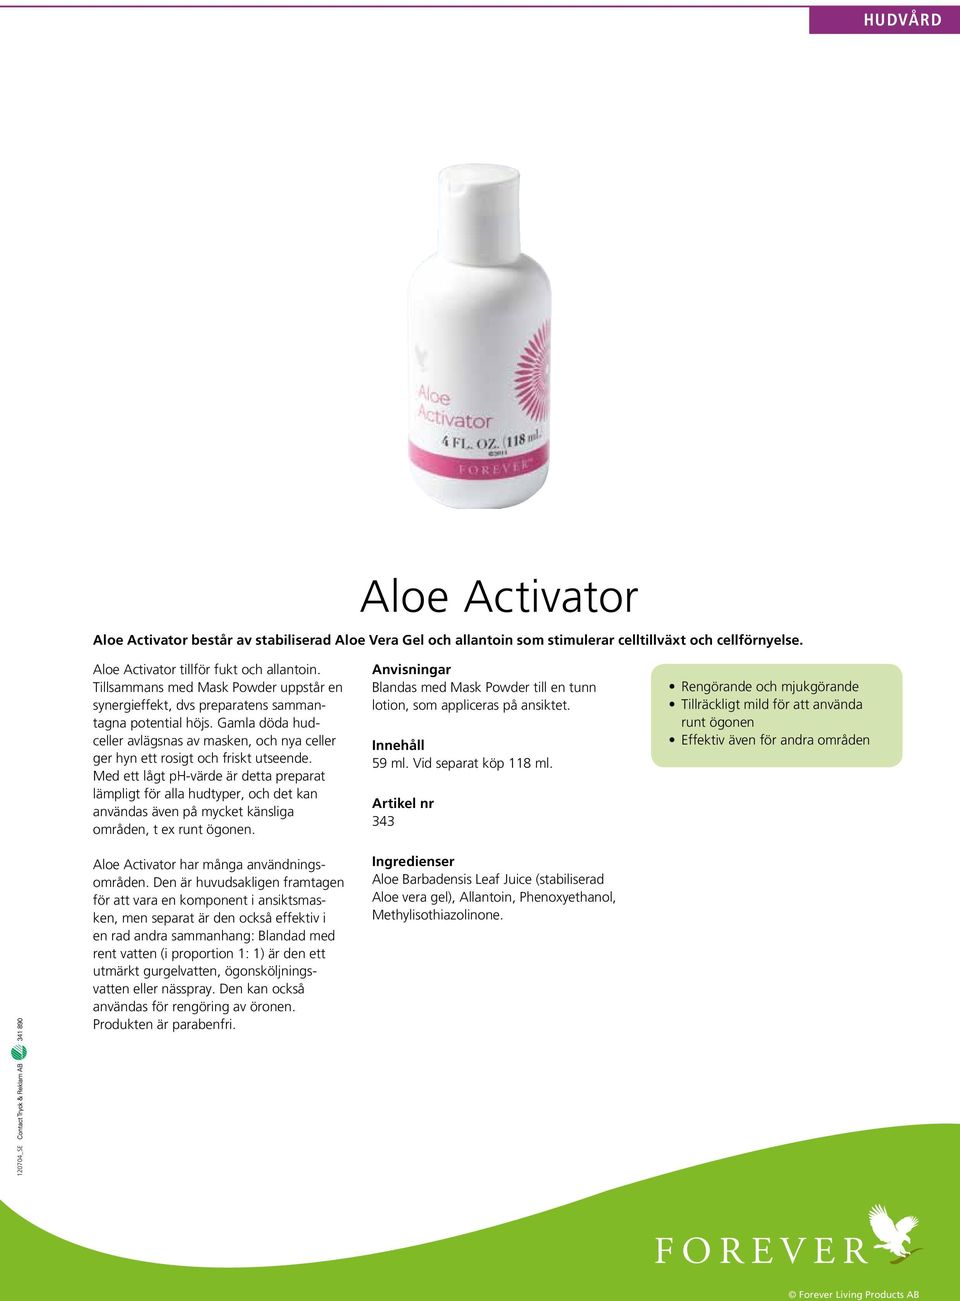 Med ett lågt ph-värde är detta preparat lämpligt för alla hudtyper, och det kan användas även på mycket känsliga områden, t ex runt ögonen. Aloe Activator har många användningsområden.